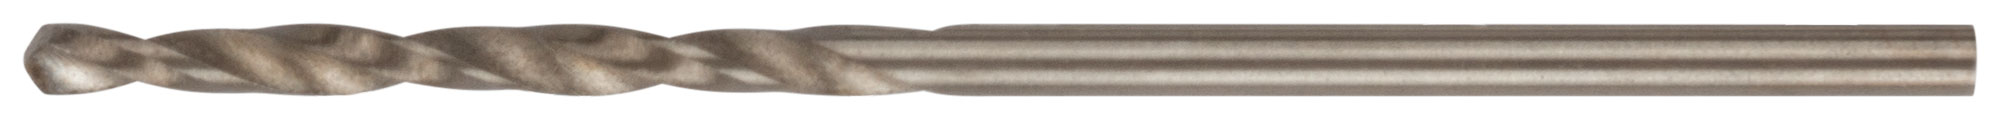 Сверло по металлу Cutop Profi с кобальтом 5%, 1,5 x 40 мм (10 шт)